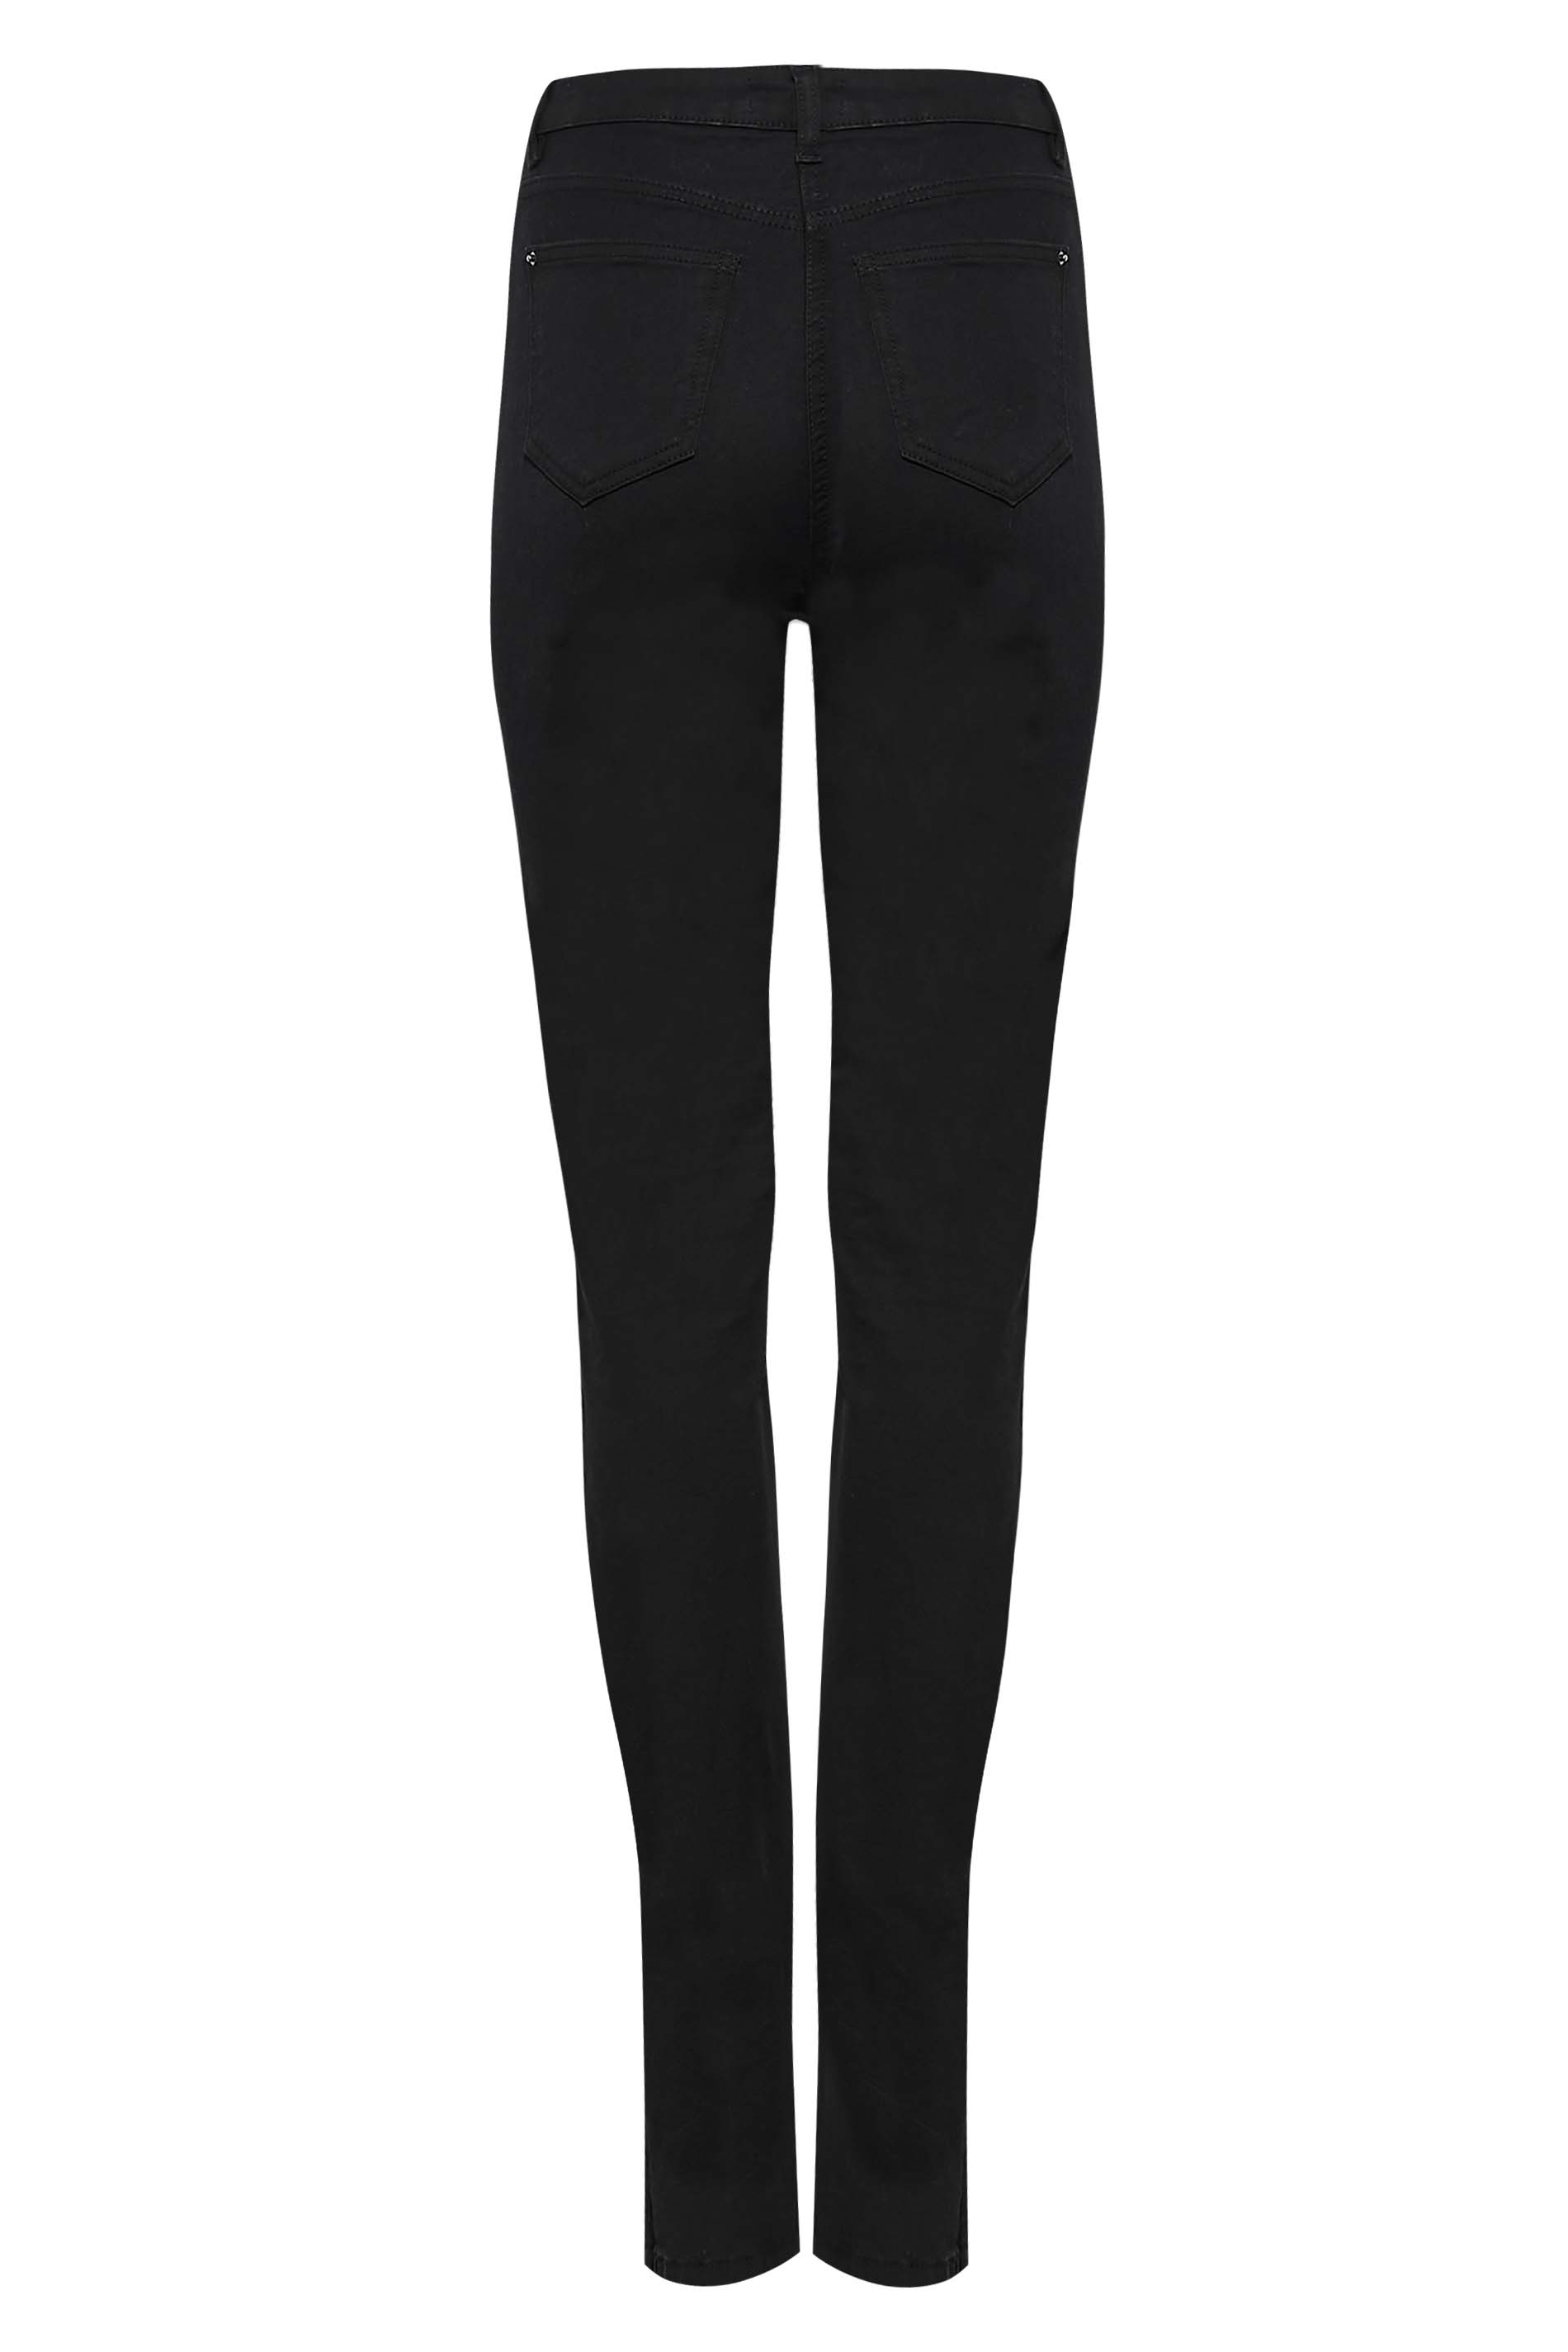 LTS Tall Women's Black MIA Slim Leg Jeans | Long Tall Sally 3